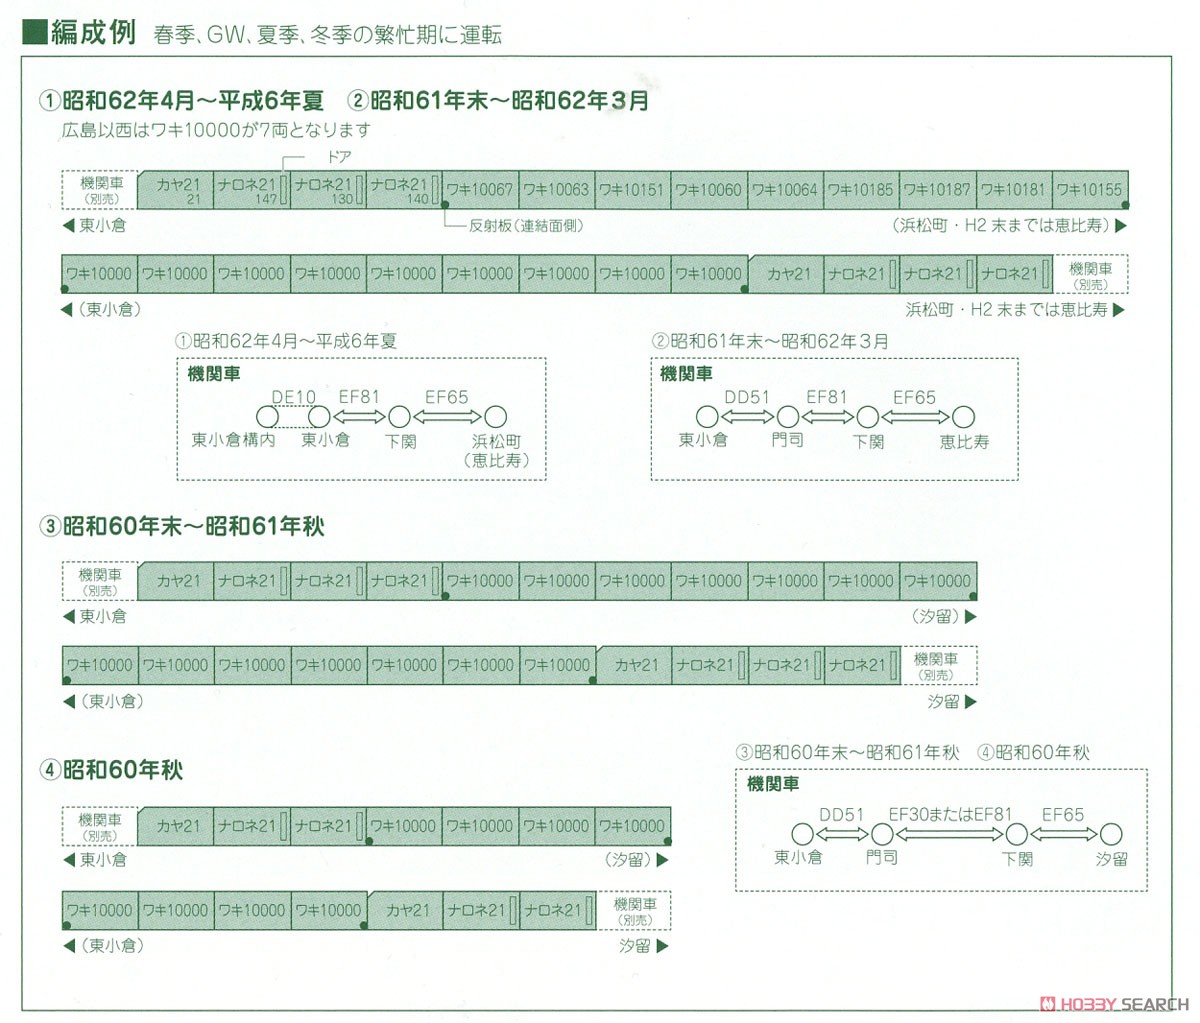 【特別企画品】 20系 「カートレイン九州」 (13両セット) (鉄道模型) 解説2